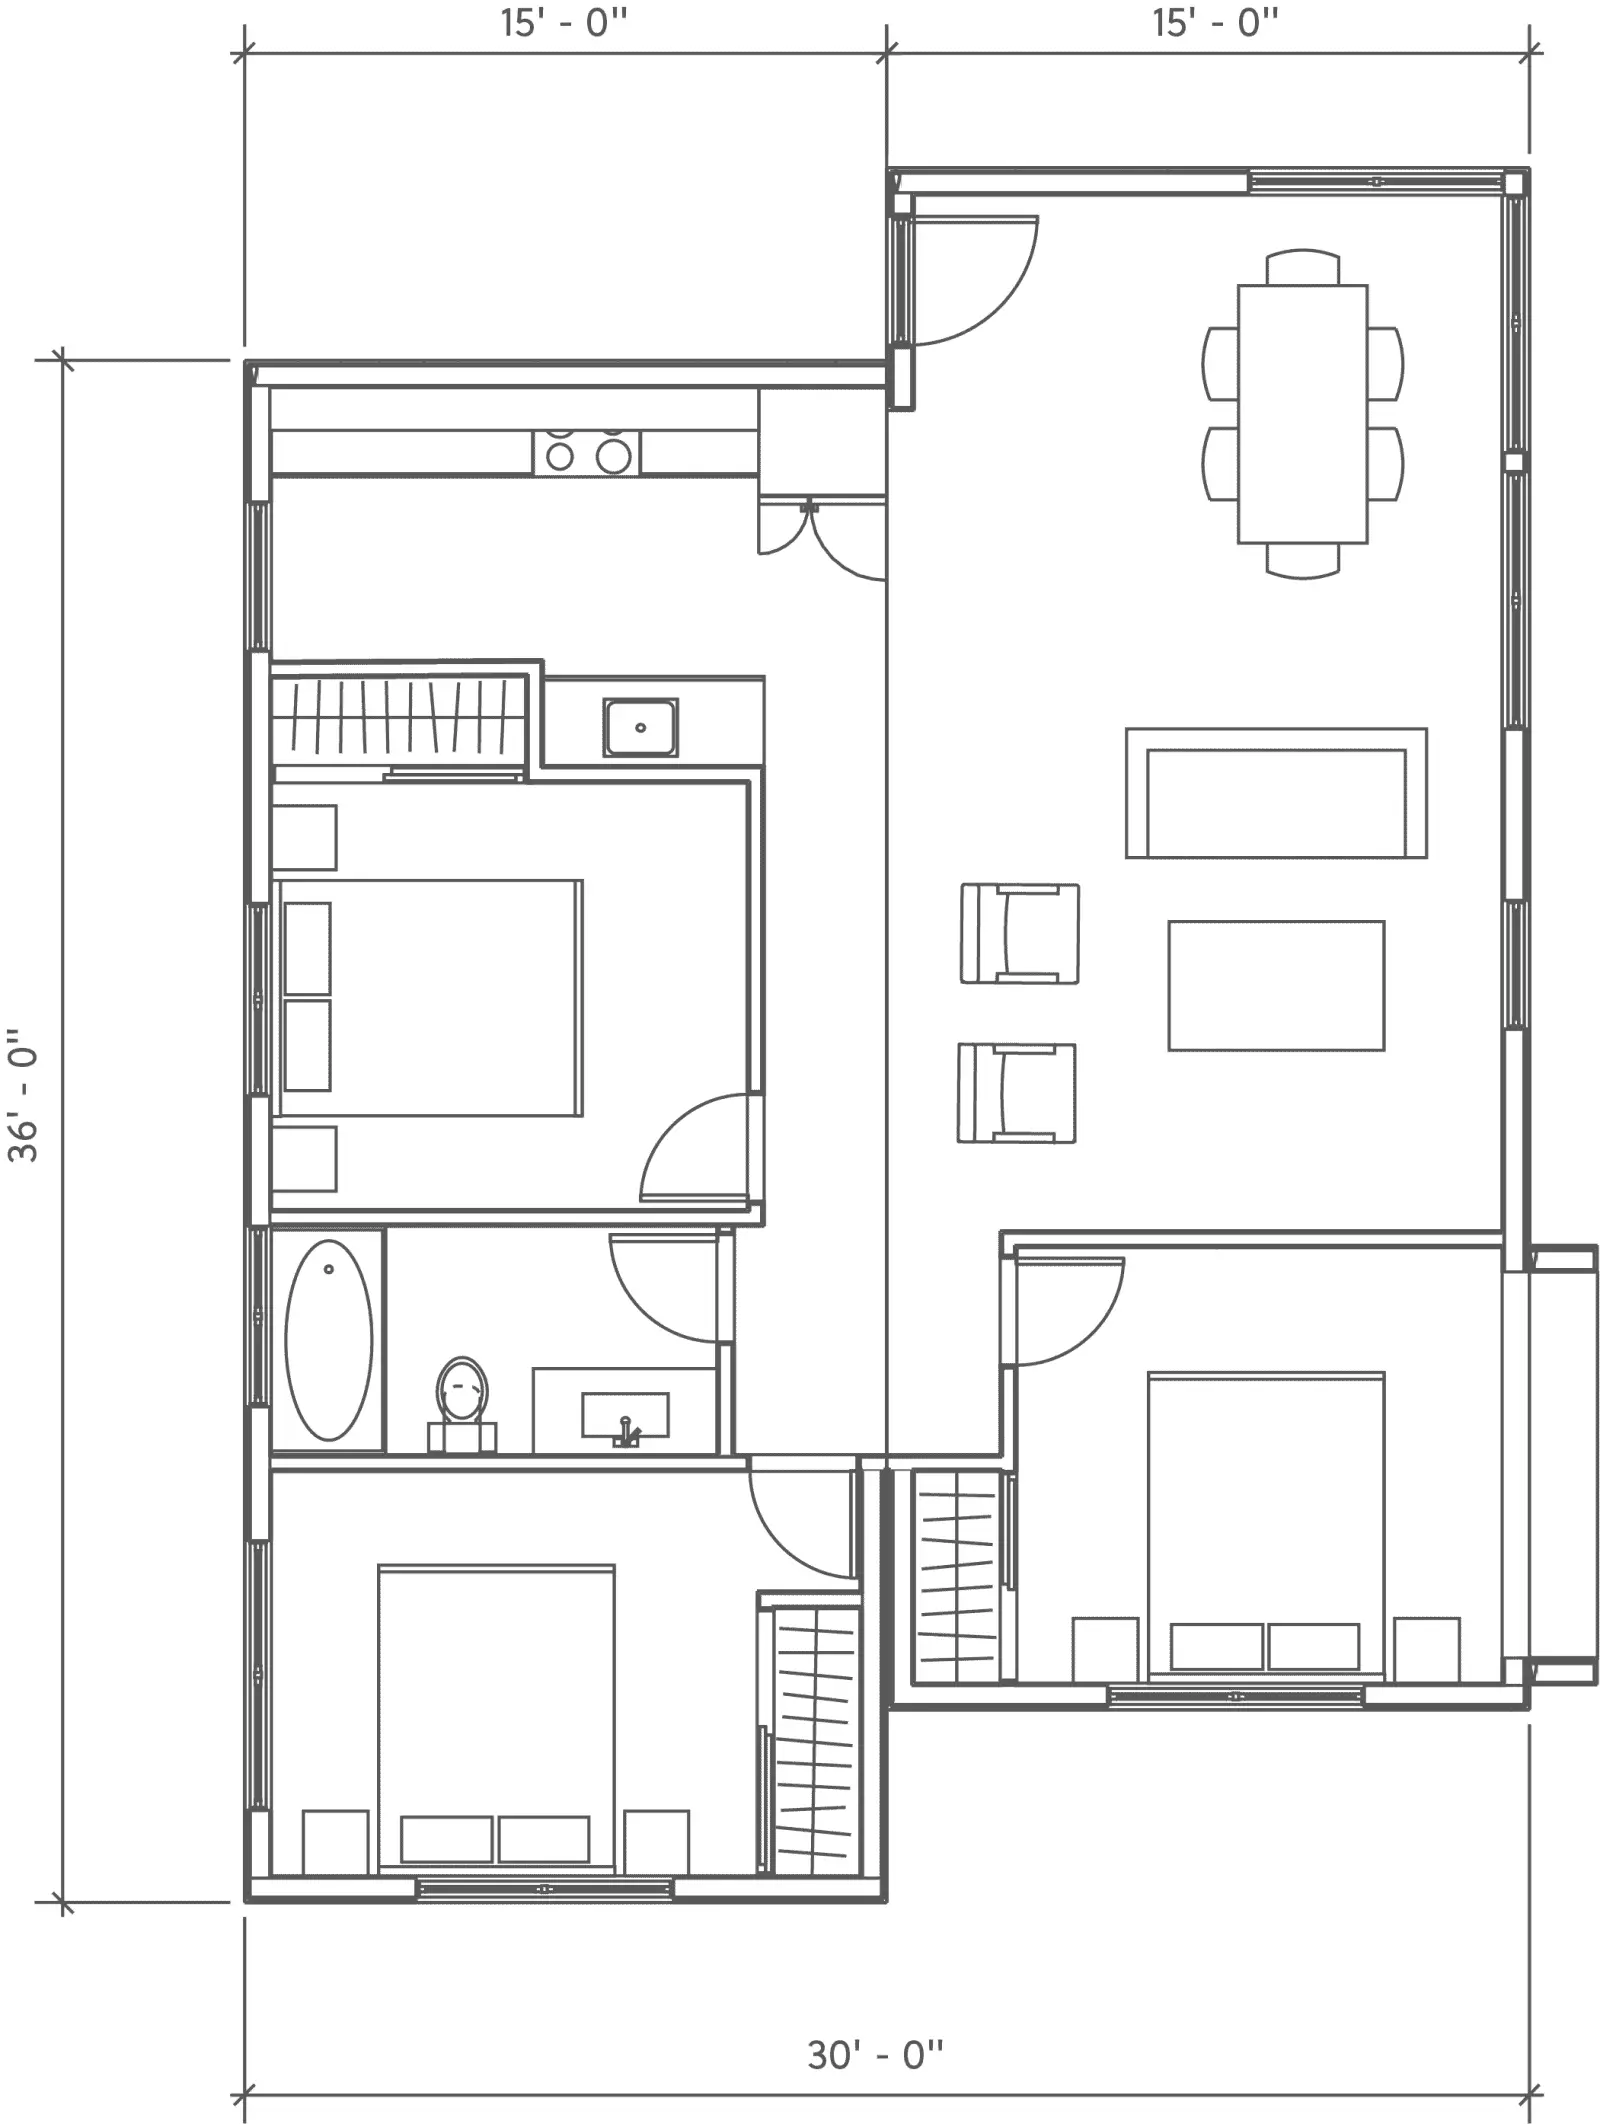 Casita 1100 prefab home model by MA Modular - floor plan.